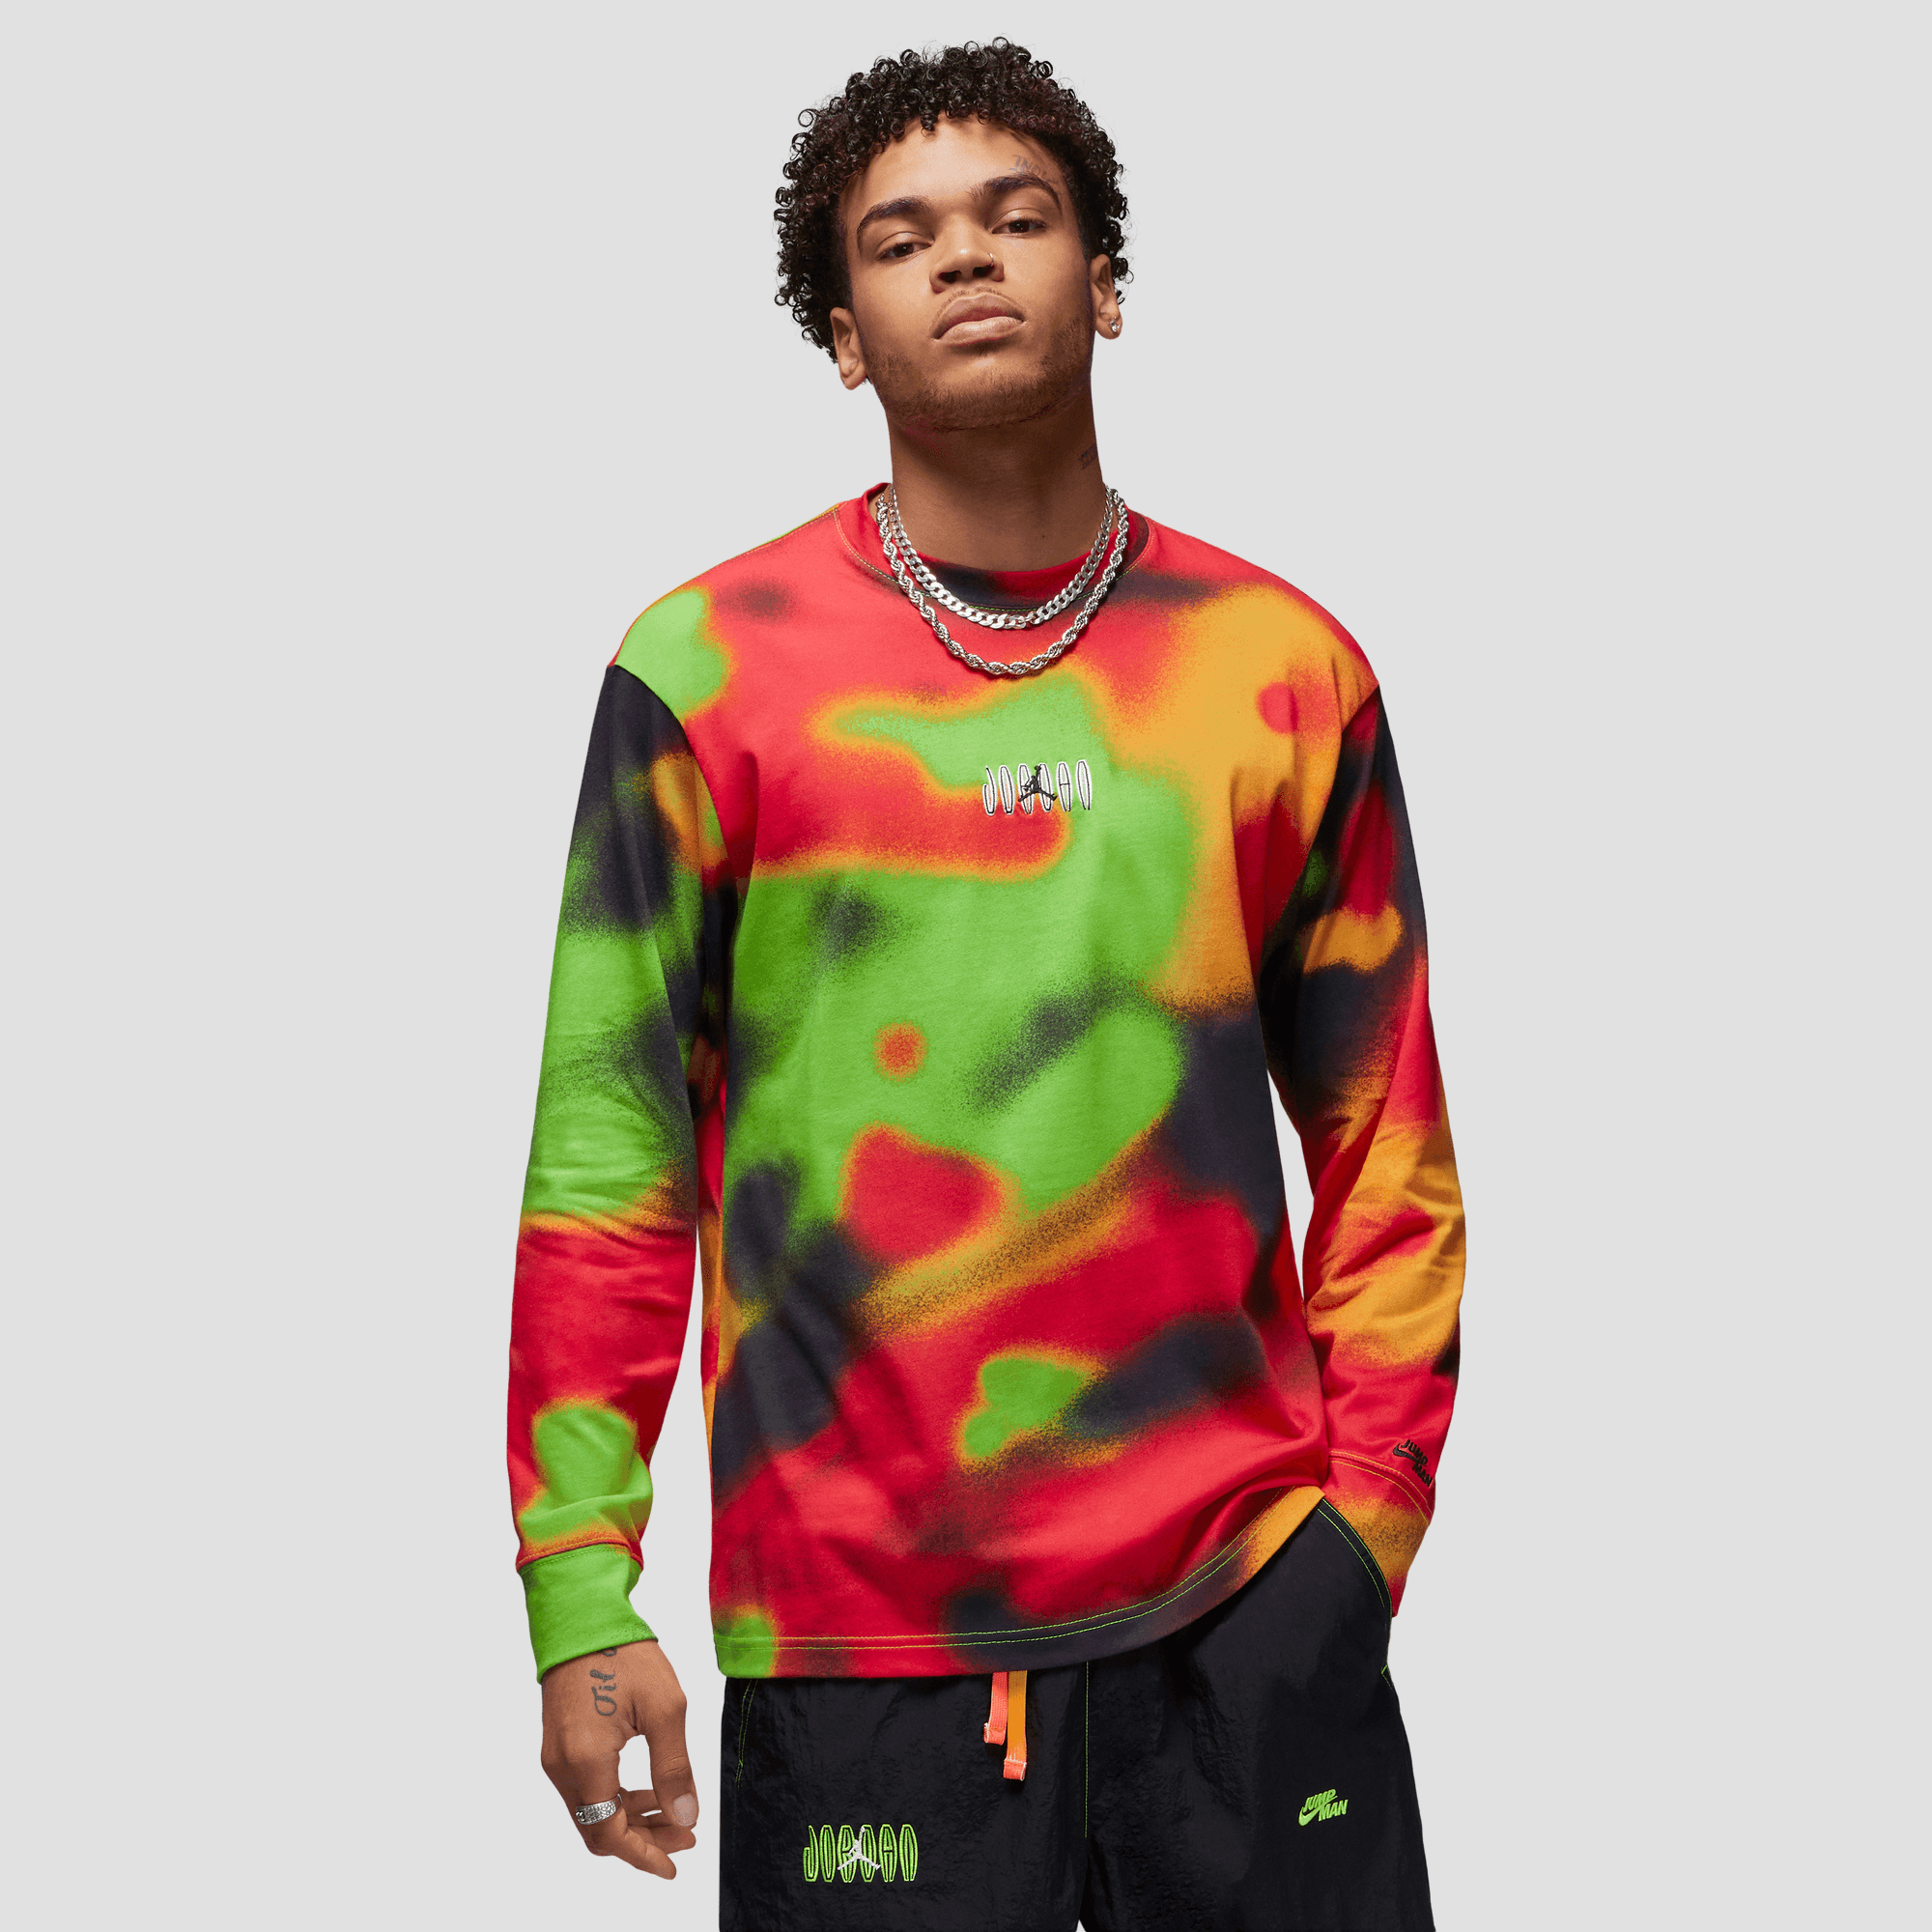 Nike Michael Jordan Graphic T-Shirt, DM1422-010